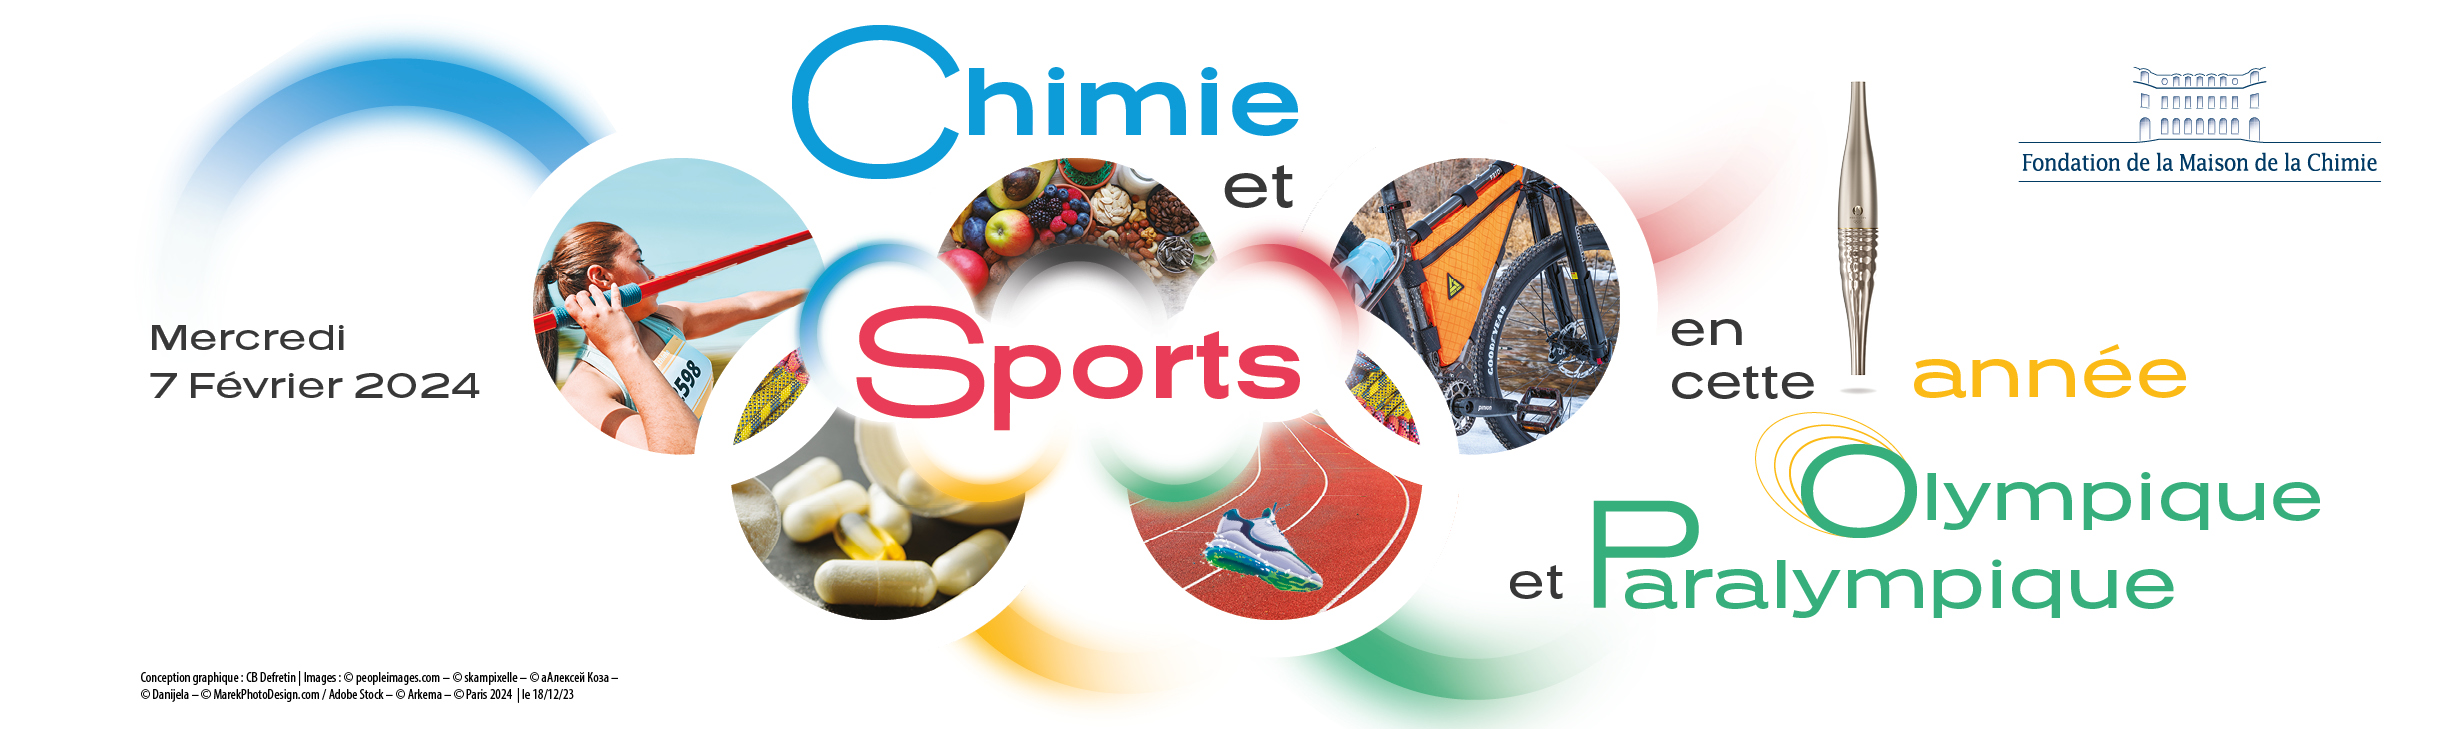 Colloque Chimie et Sports, Année Olympique et Paralympique